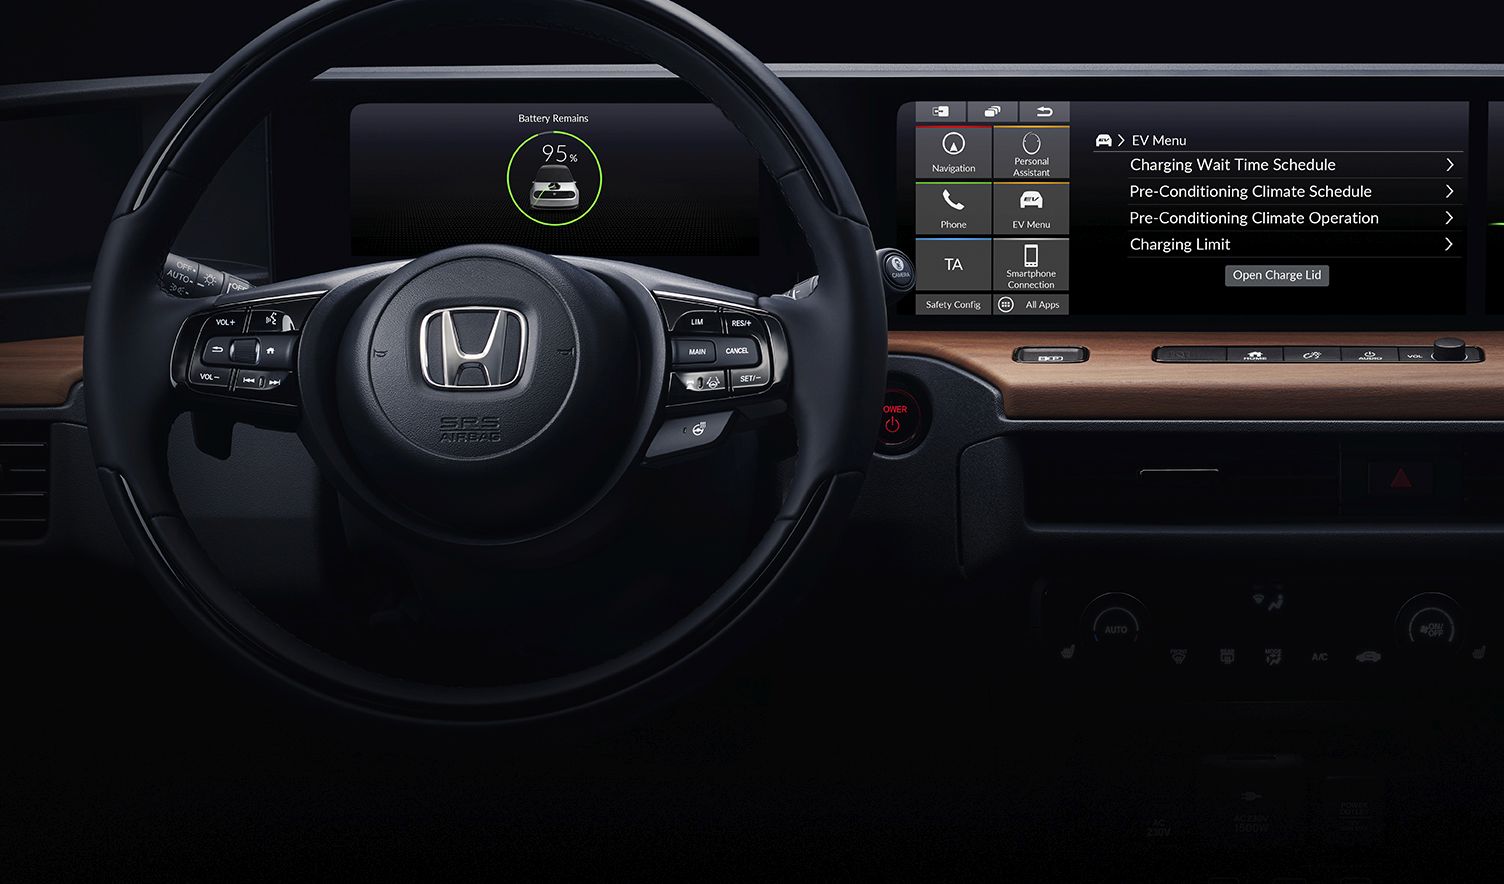 PR Honda _ Honda revela o interior do seu novo protótipo elétrico no Salão Automóvel de Genebra_